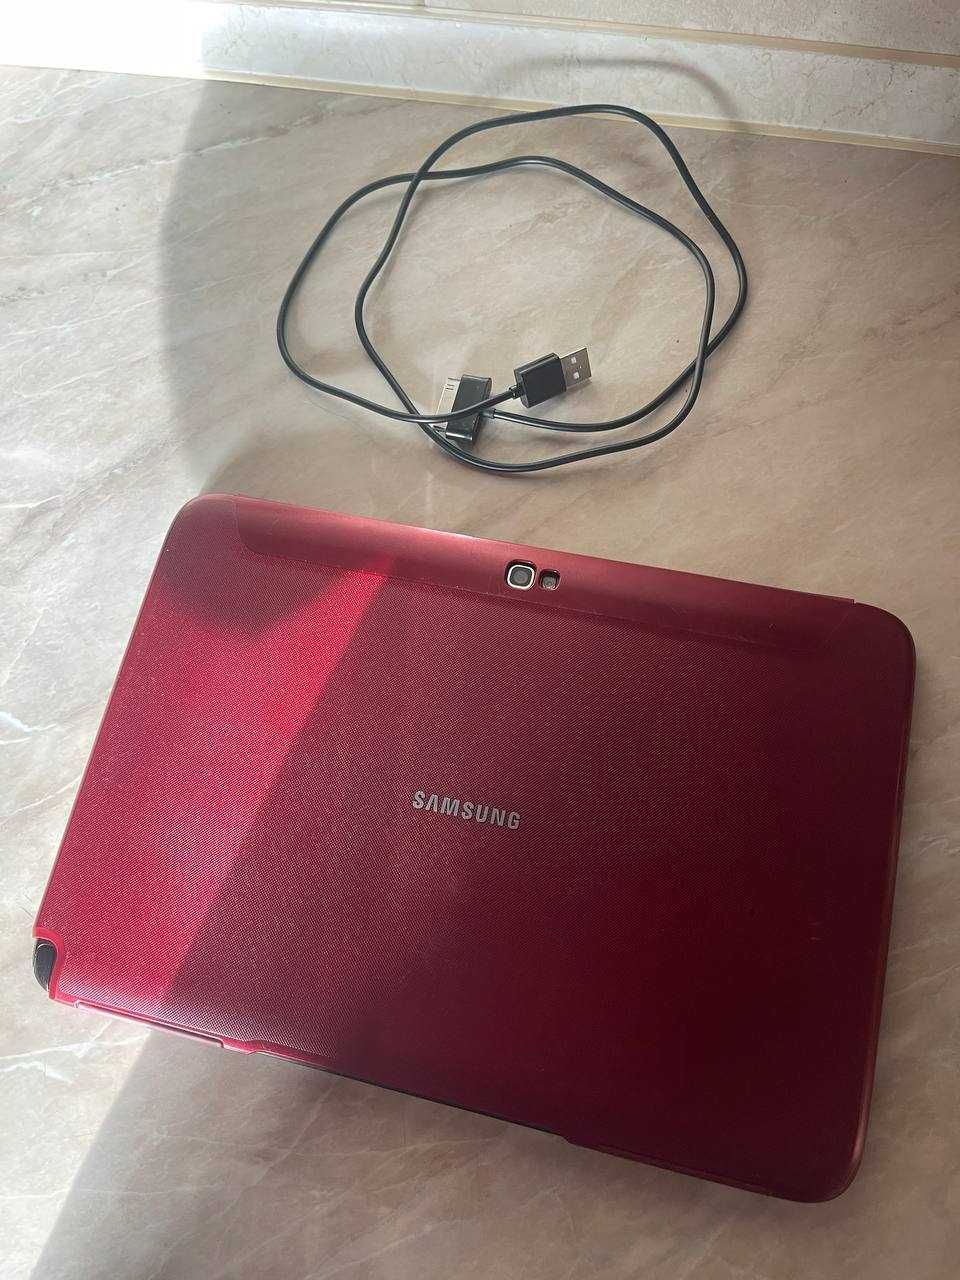 Samsung Galaxy Note 10.1 N8000 16Gb Red edition планшет